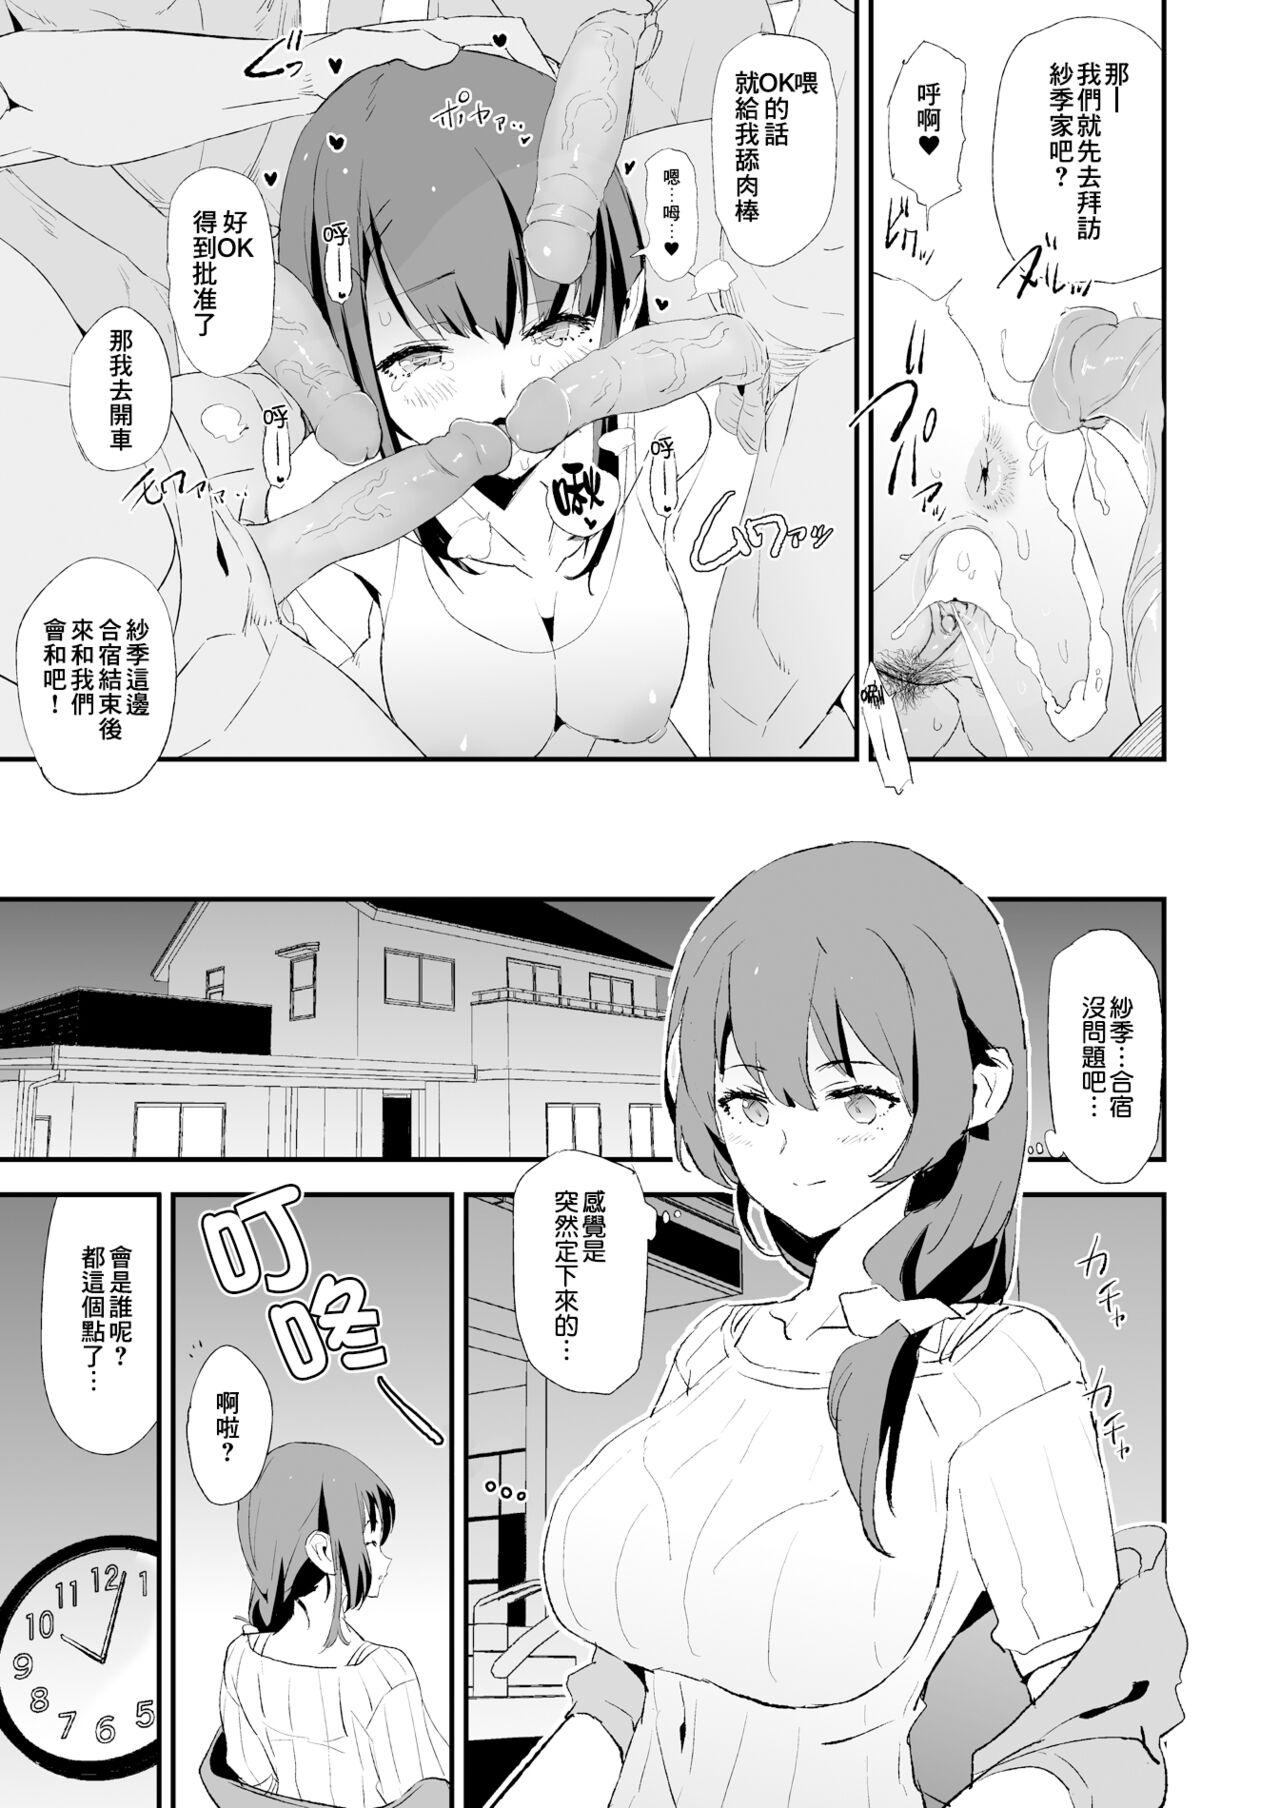 Spa Musume no Tsugi wa Mama Onaho - Onaho Gasshuku #2 + Omake - Original Double Penetration - Page 9